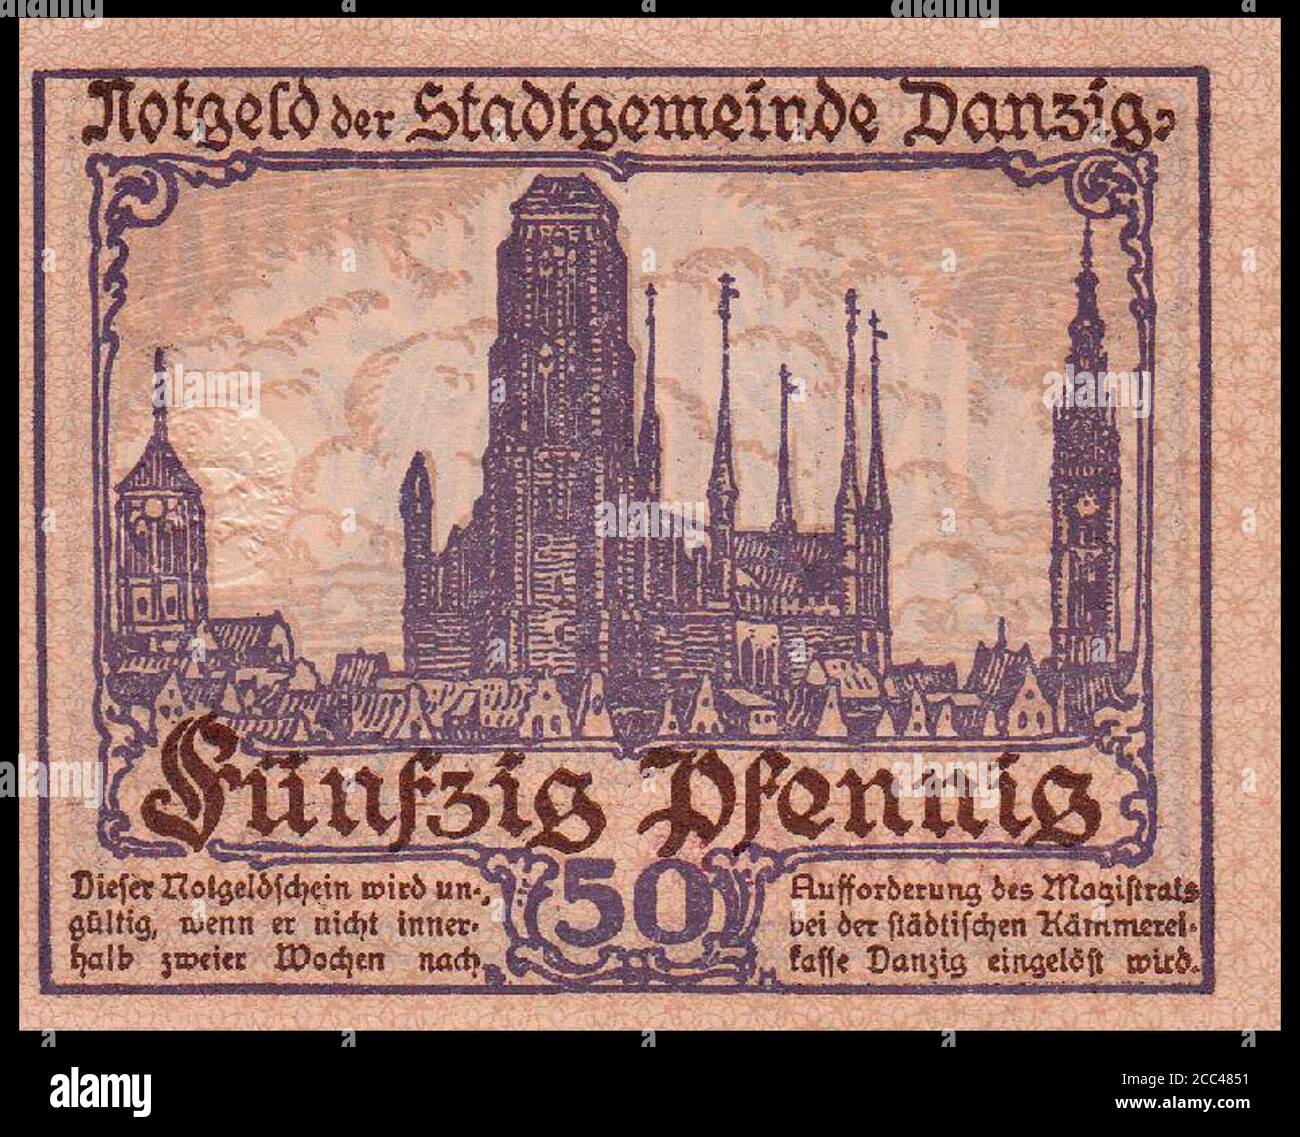 Notgeld-Banknote von Danzig (Stadt). 50 Pfennig. Im Hintergrund konnte man die St. Mary's Church sehen. April 1919 die Freie Stadt Danzig (deutsch Stockfoto